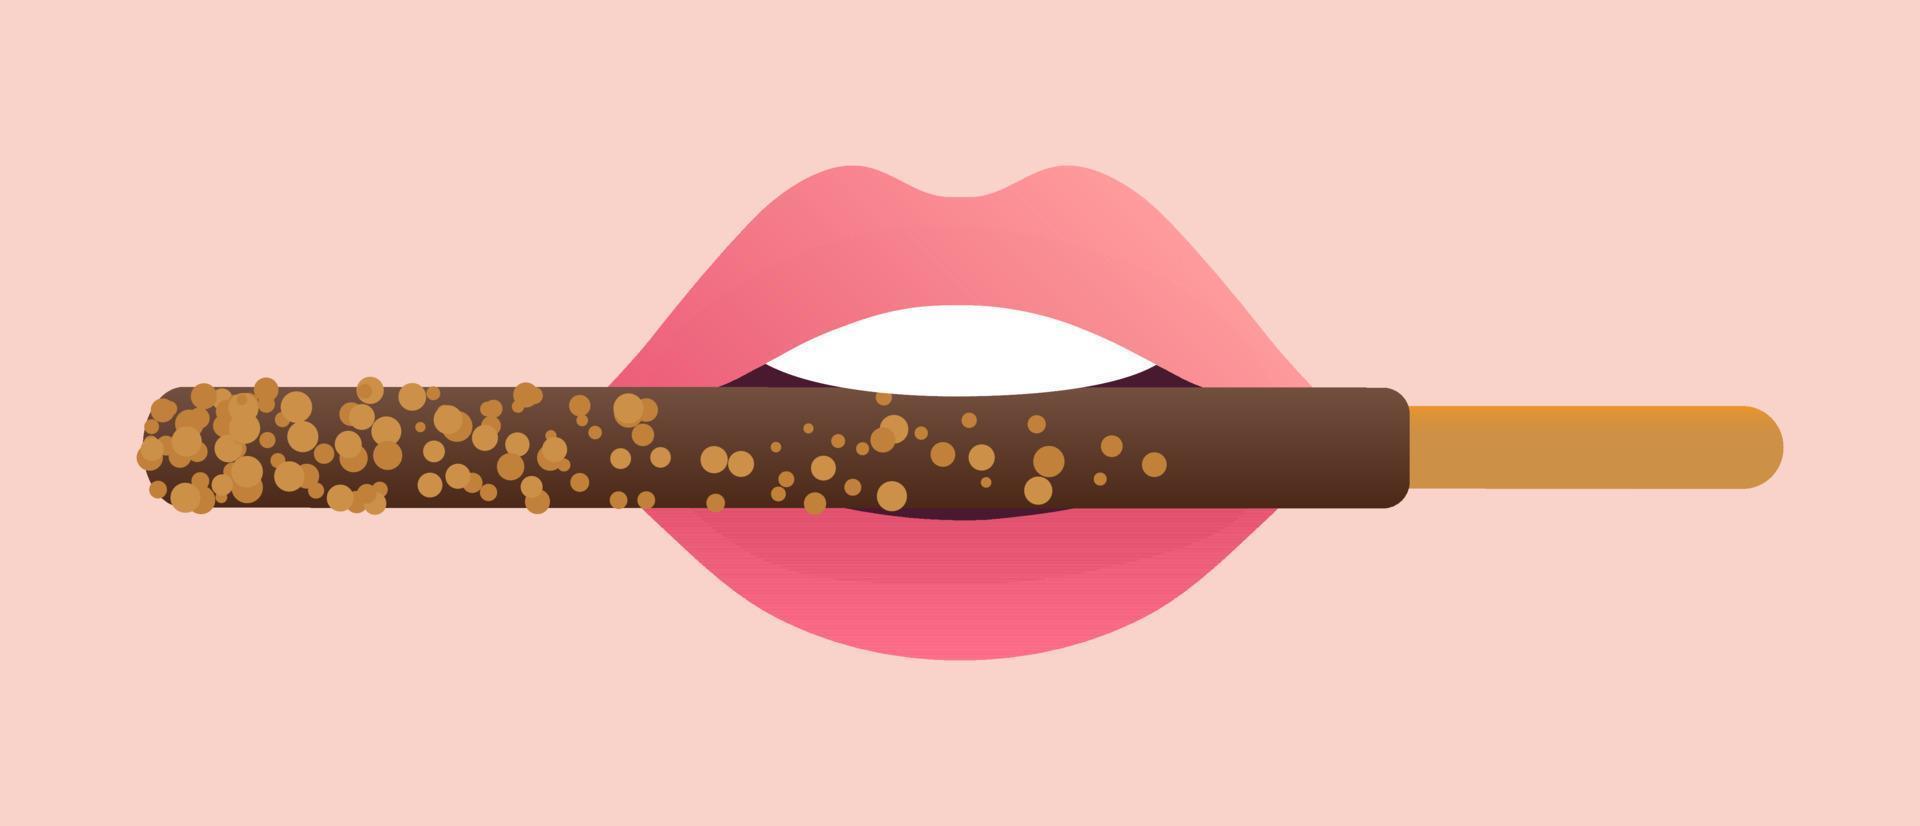 chocola gedoopt pepero stok in roze lippen vector illustratie